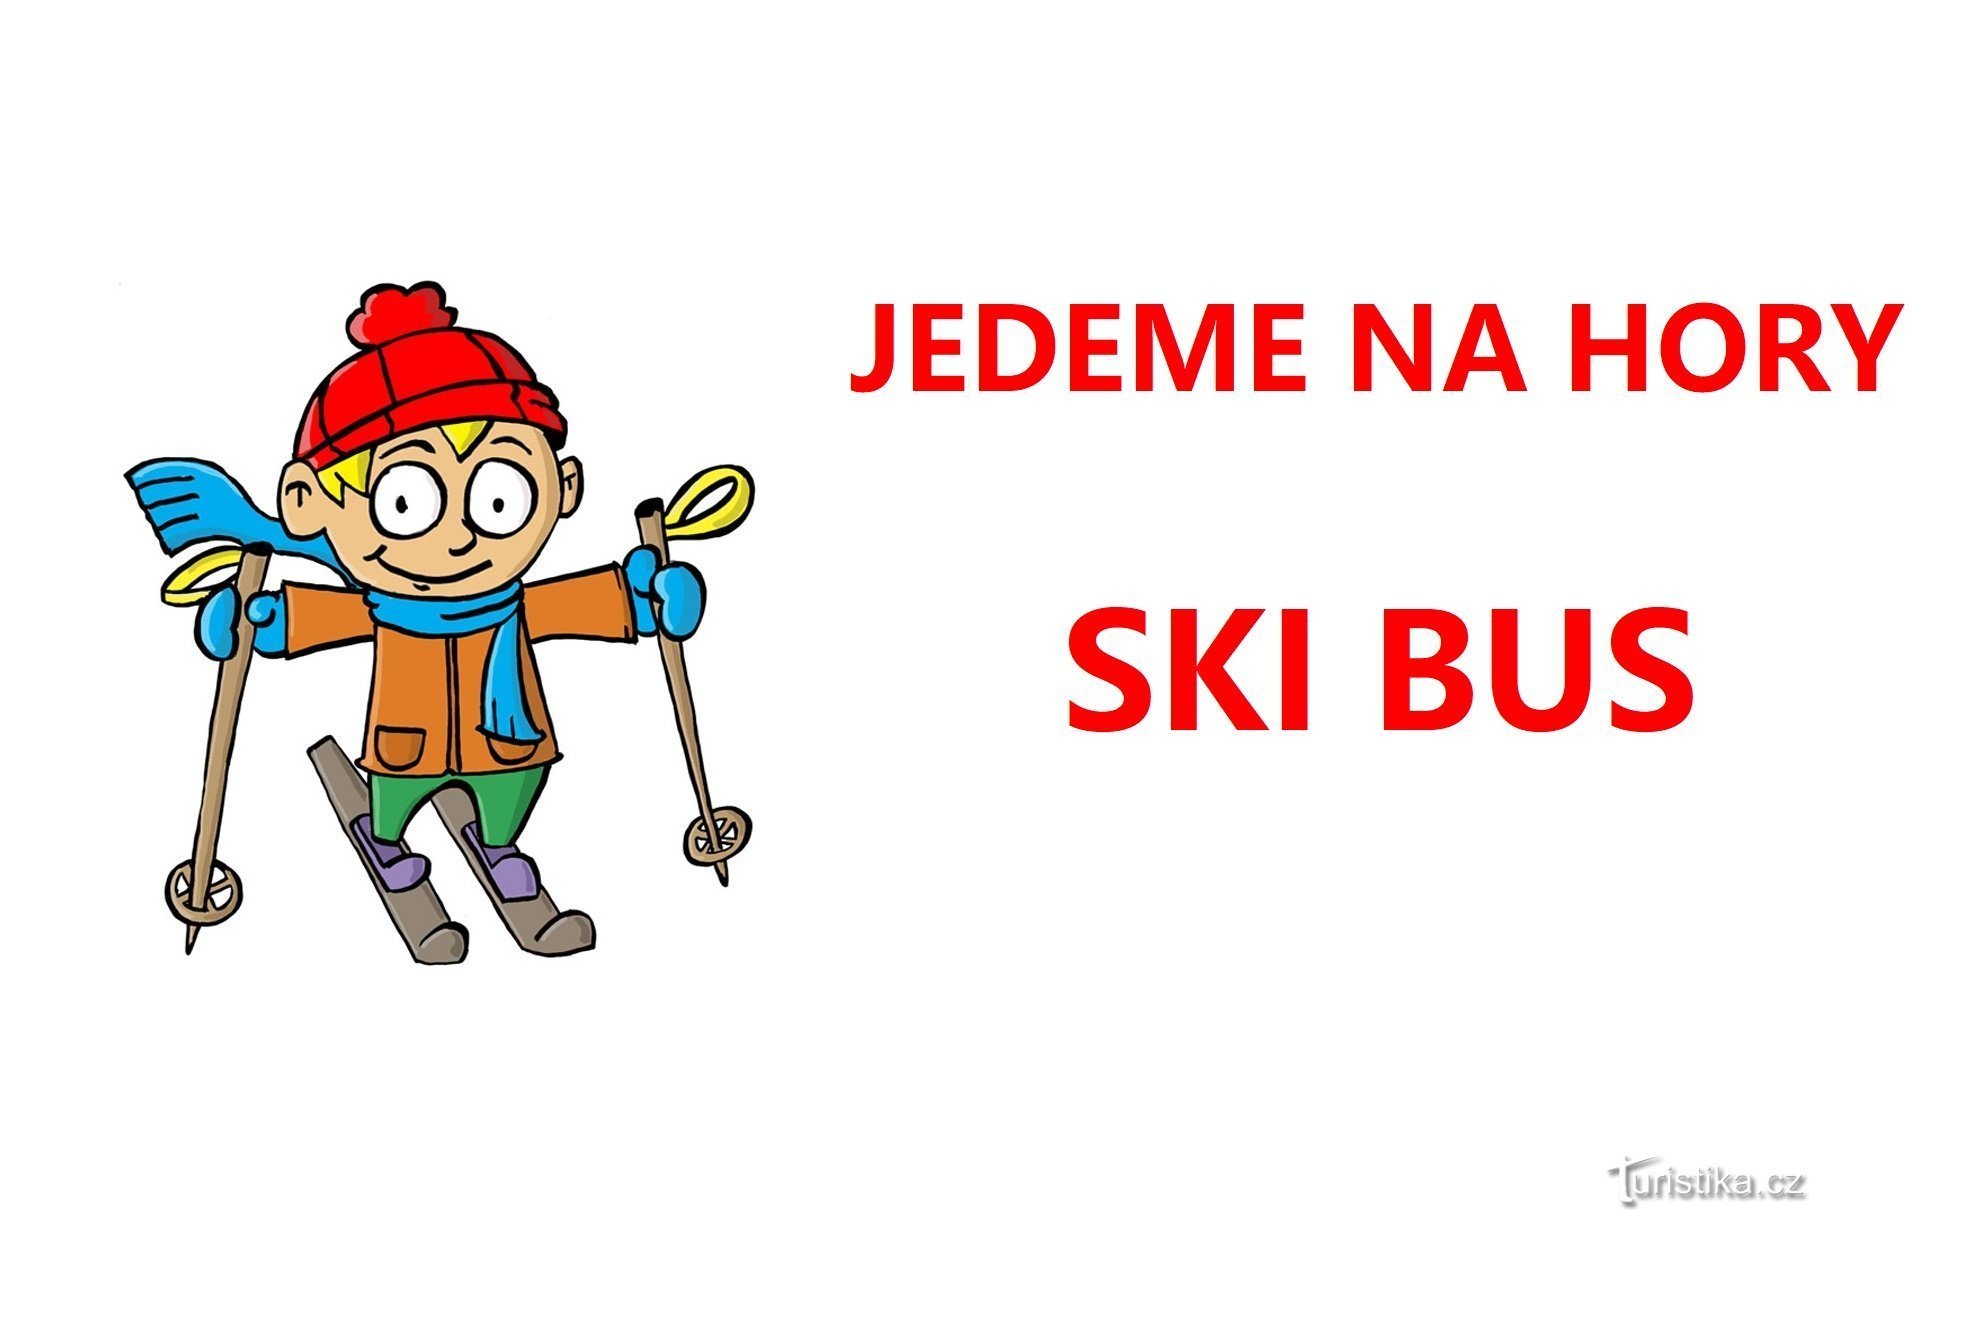 SKIBUS, Skigebiet Malá Úpa SkiMU - praktische Informationen und Fahrpläne